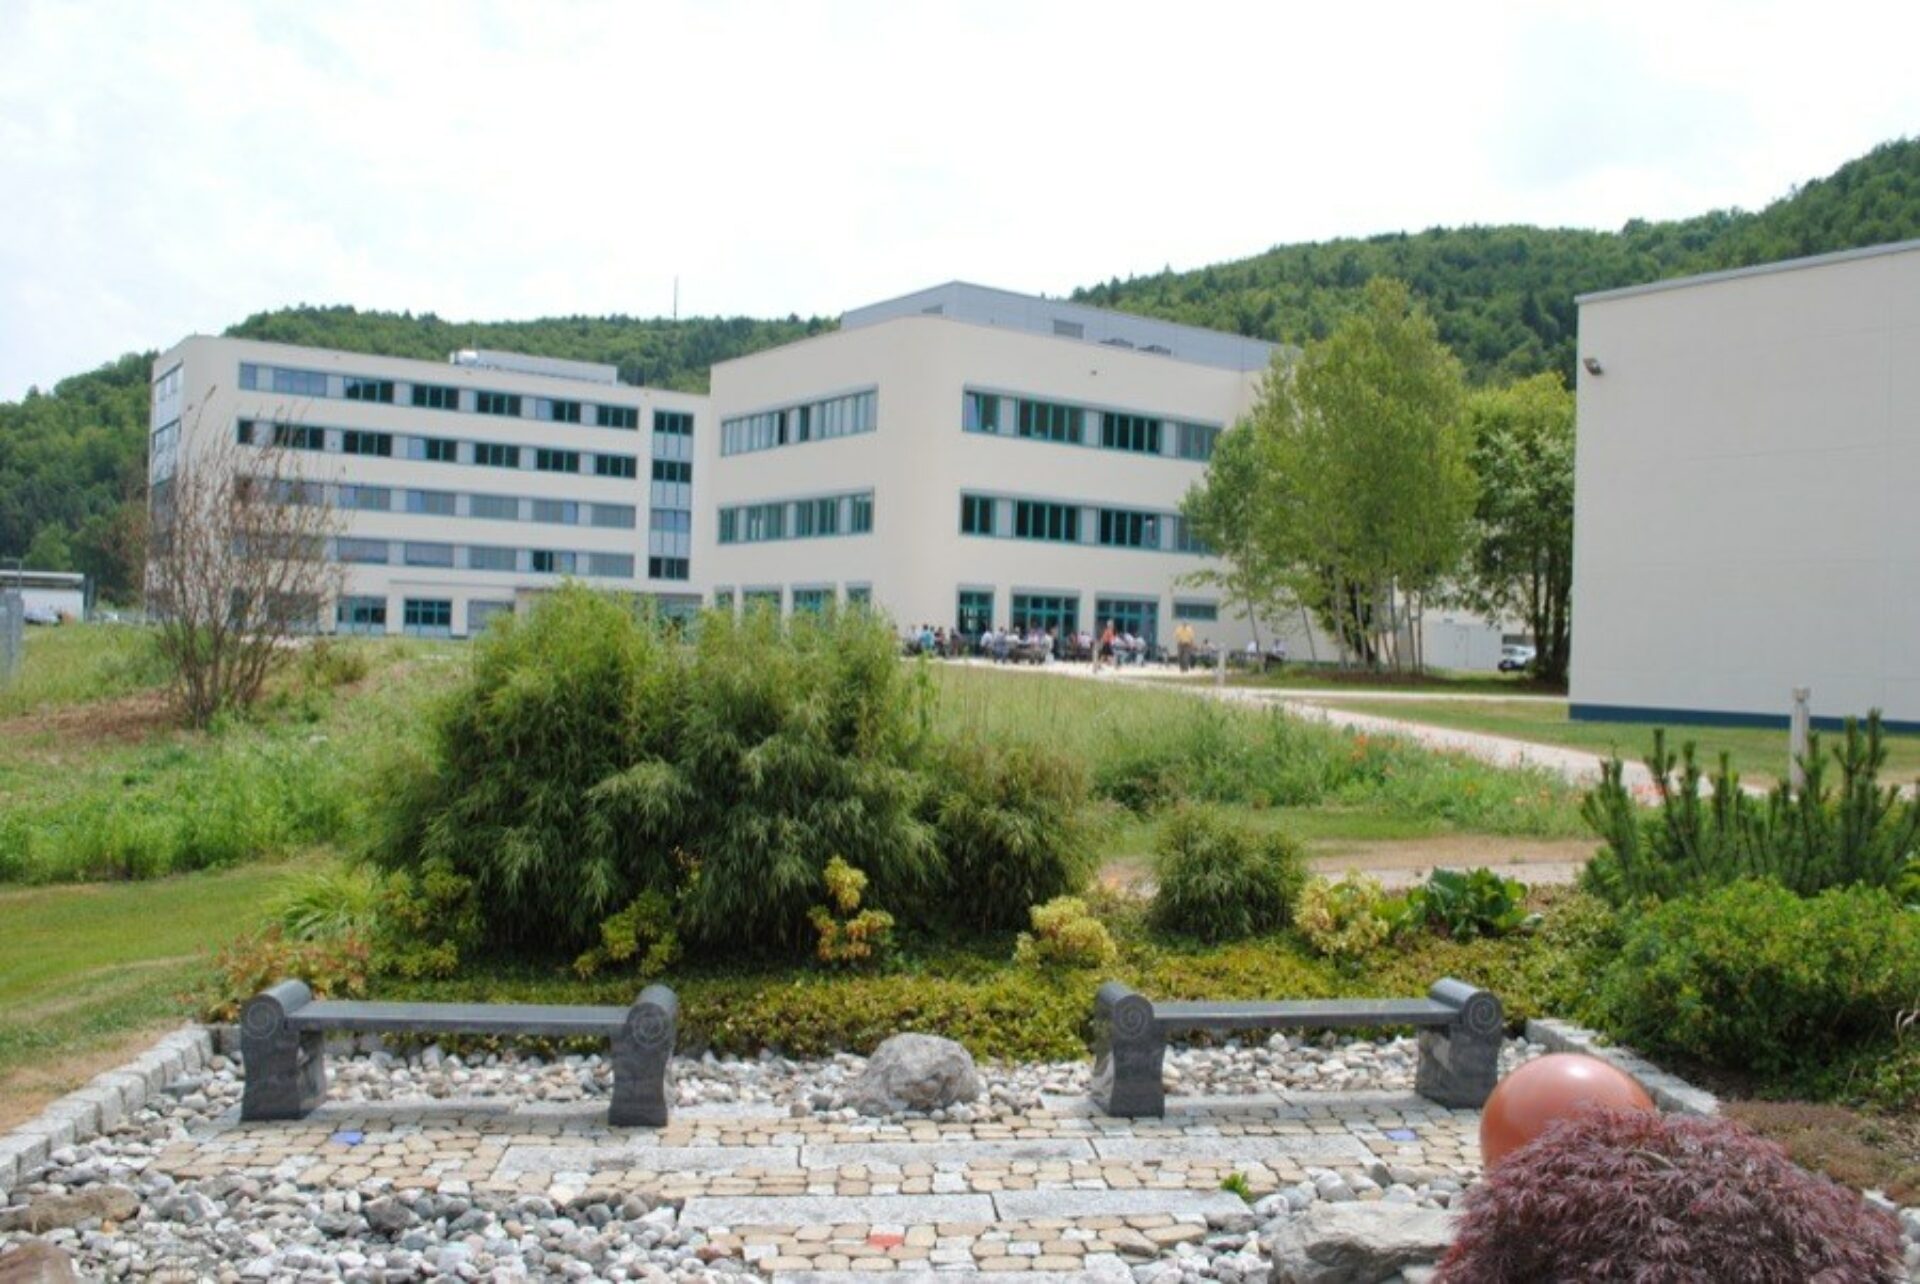 Centrotherm Fabrikerweiterung – Büro- und Produktionskomplex PV-Industrie1178